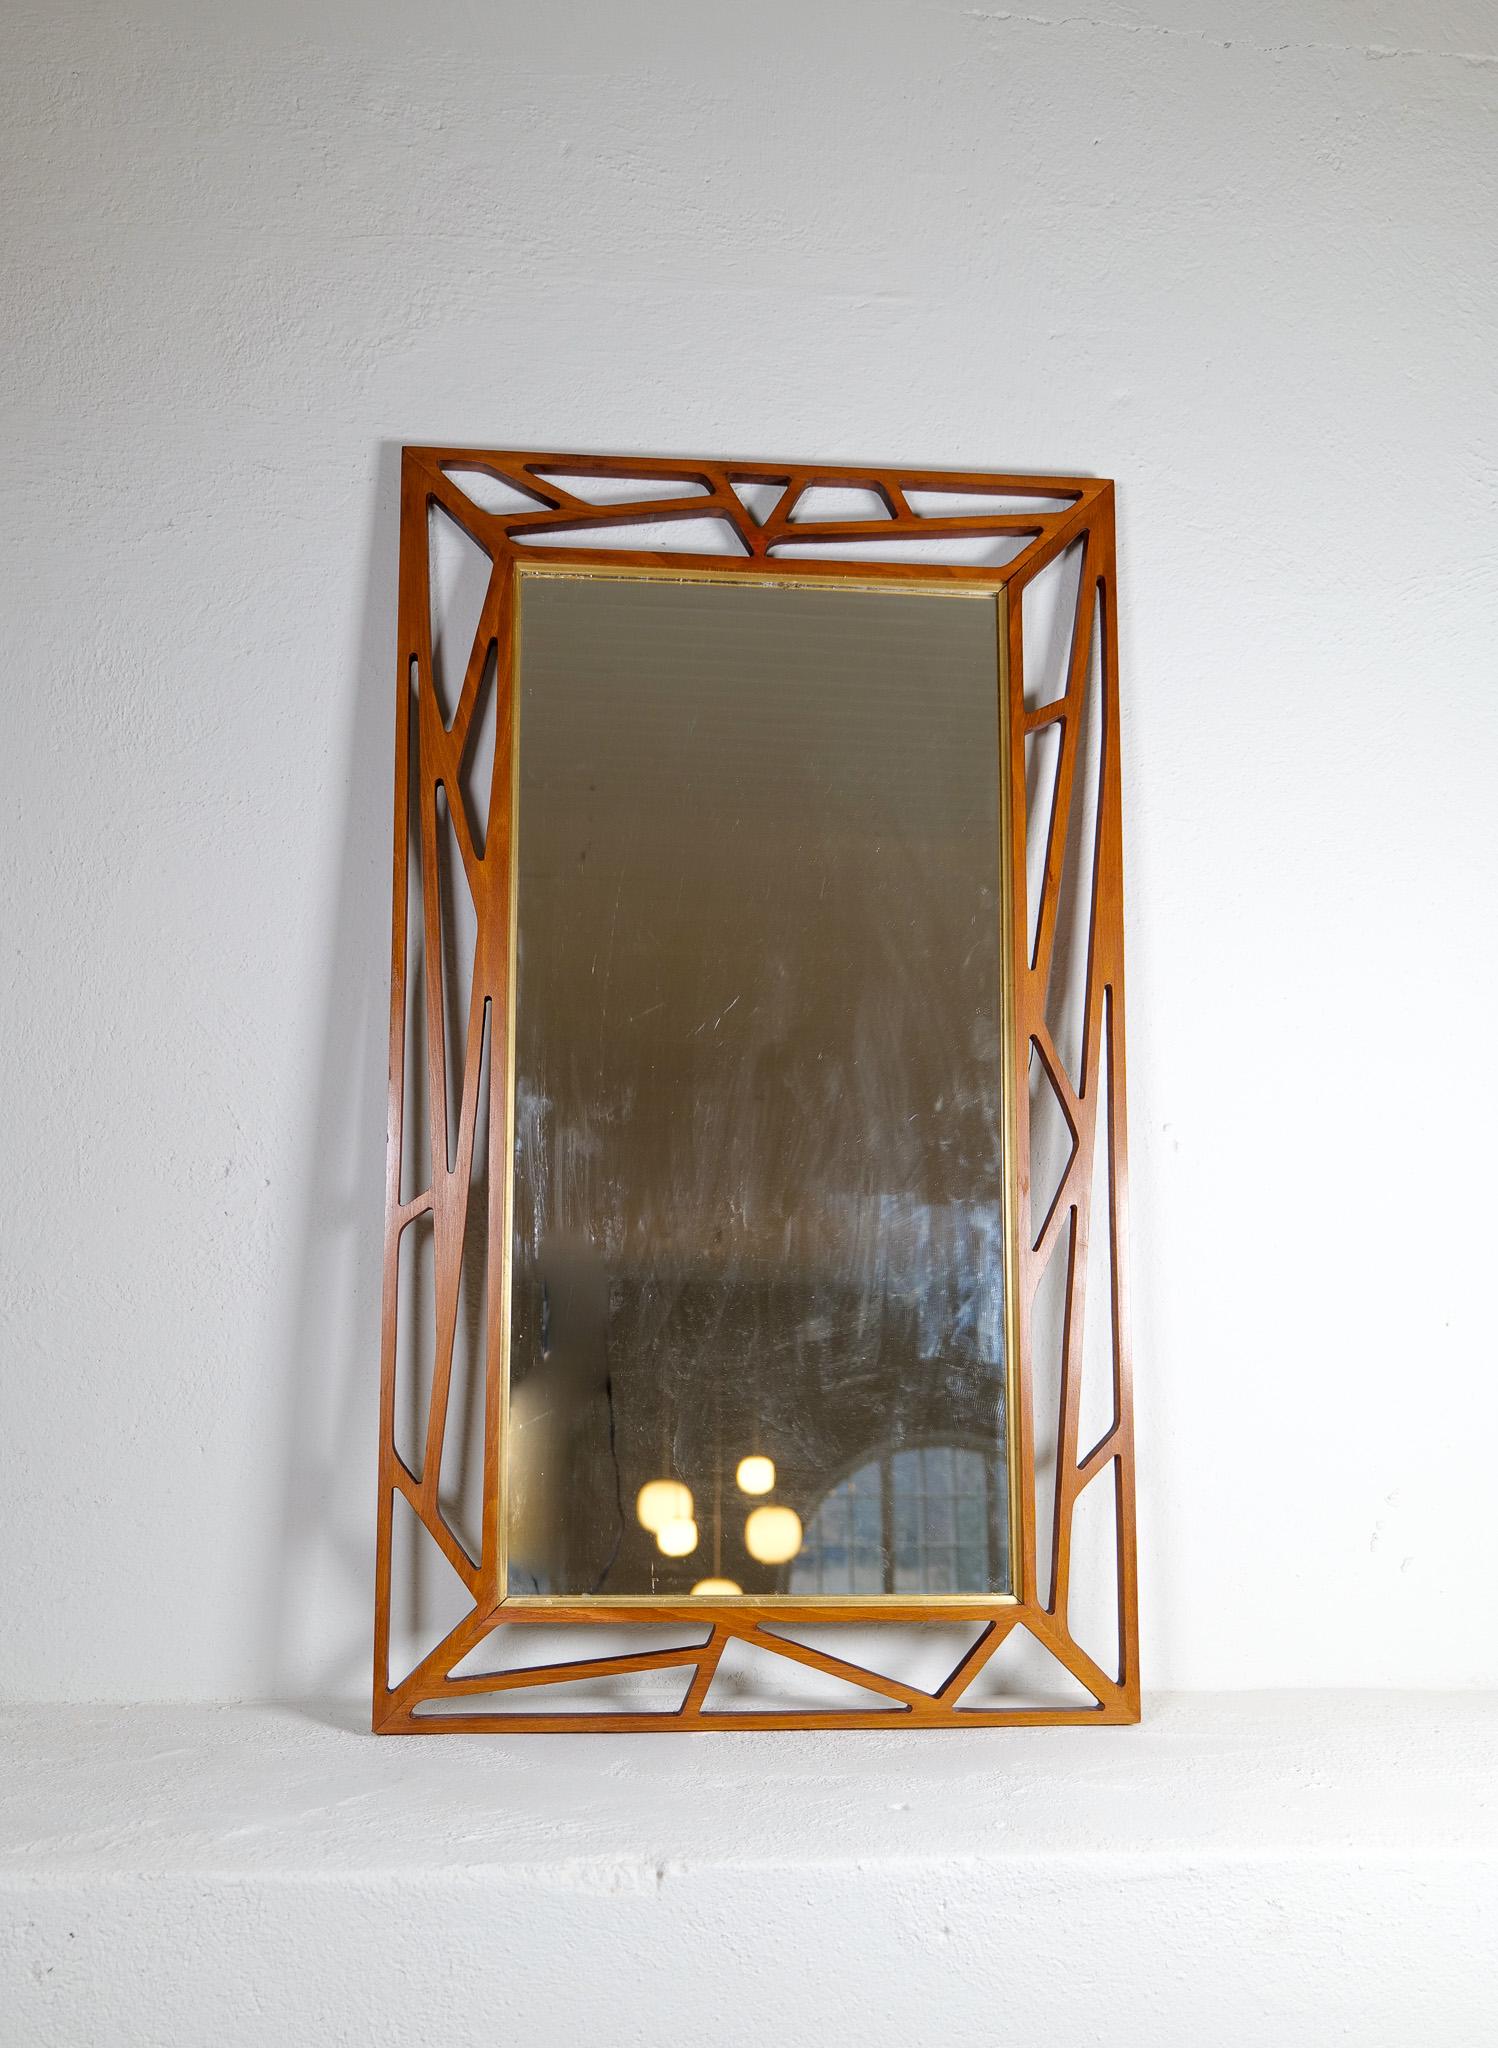 Ce miroir au design exceptionnel a été conçu par Yngve Ekström dans les années 1950, en Suède. Le 